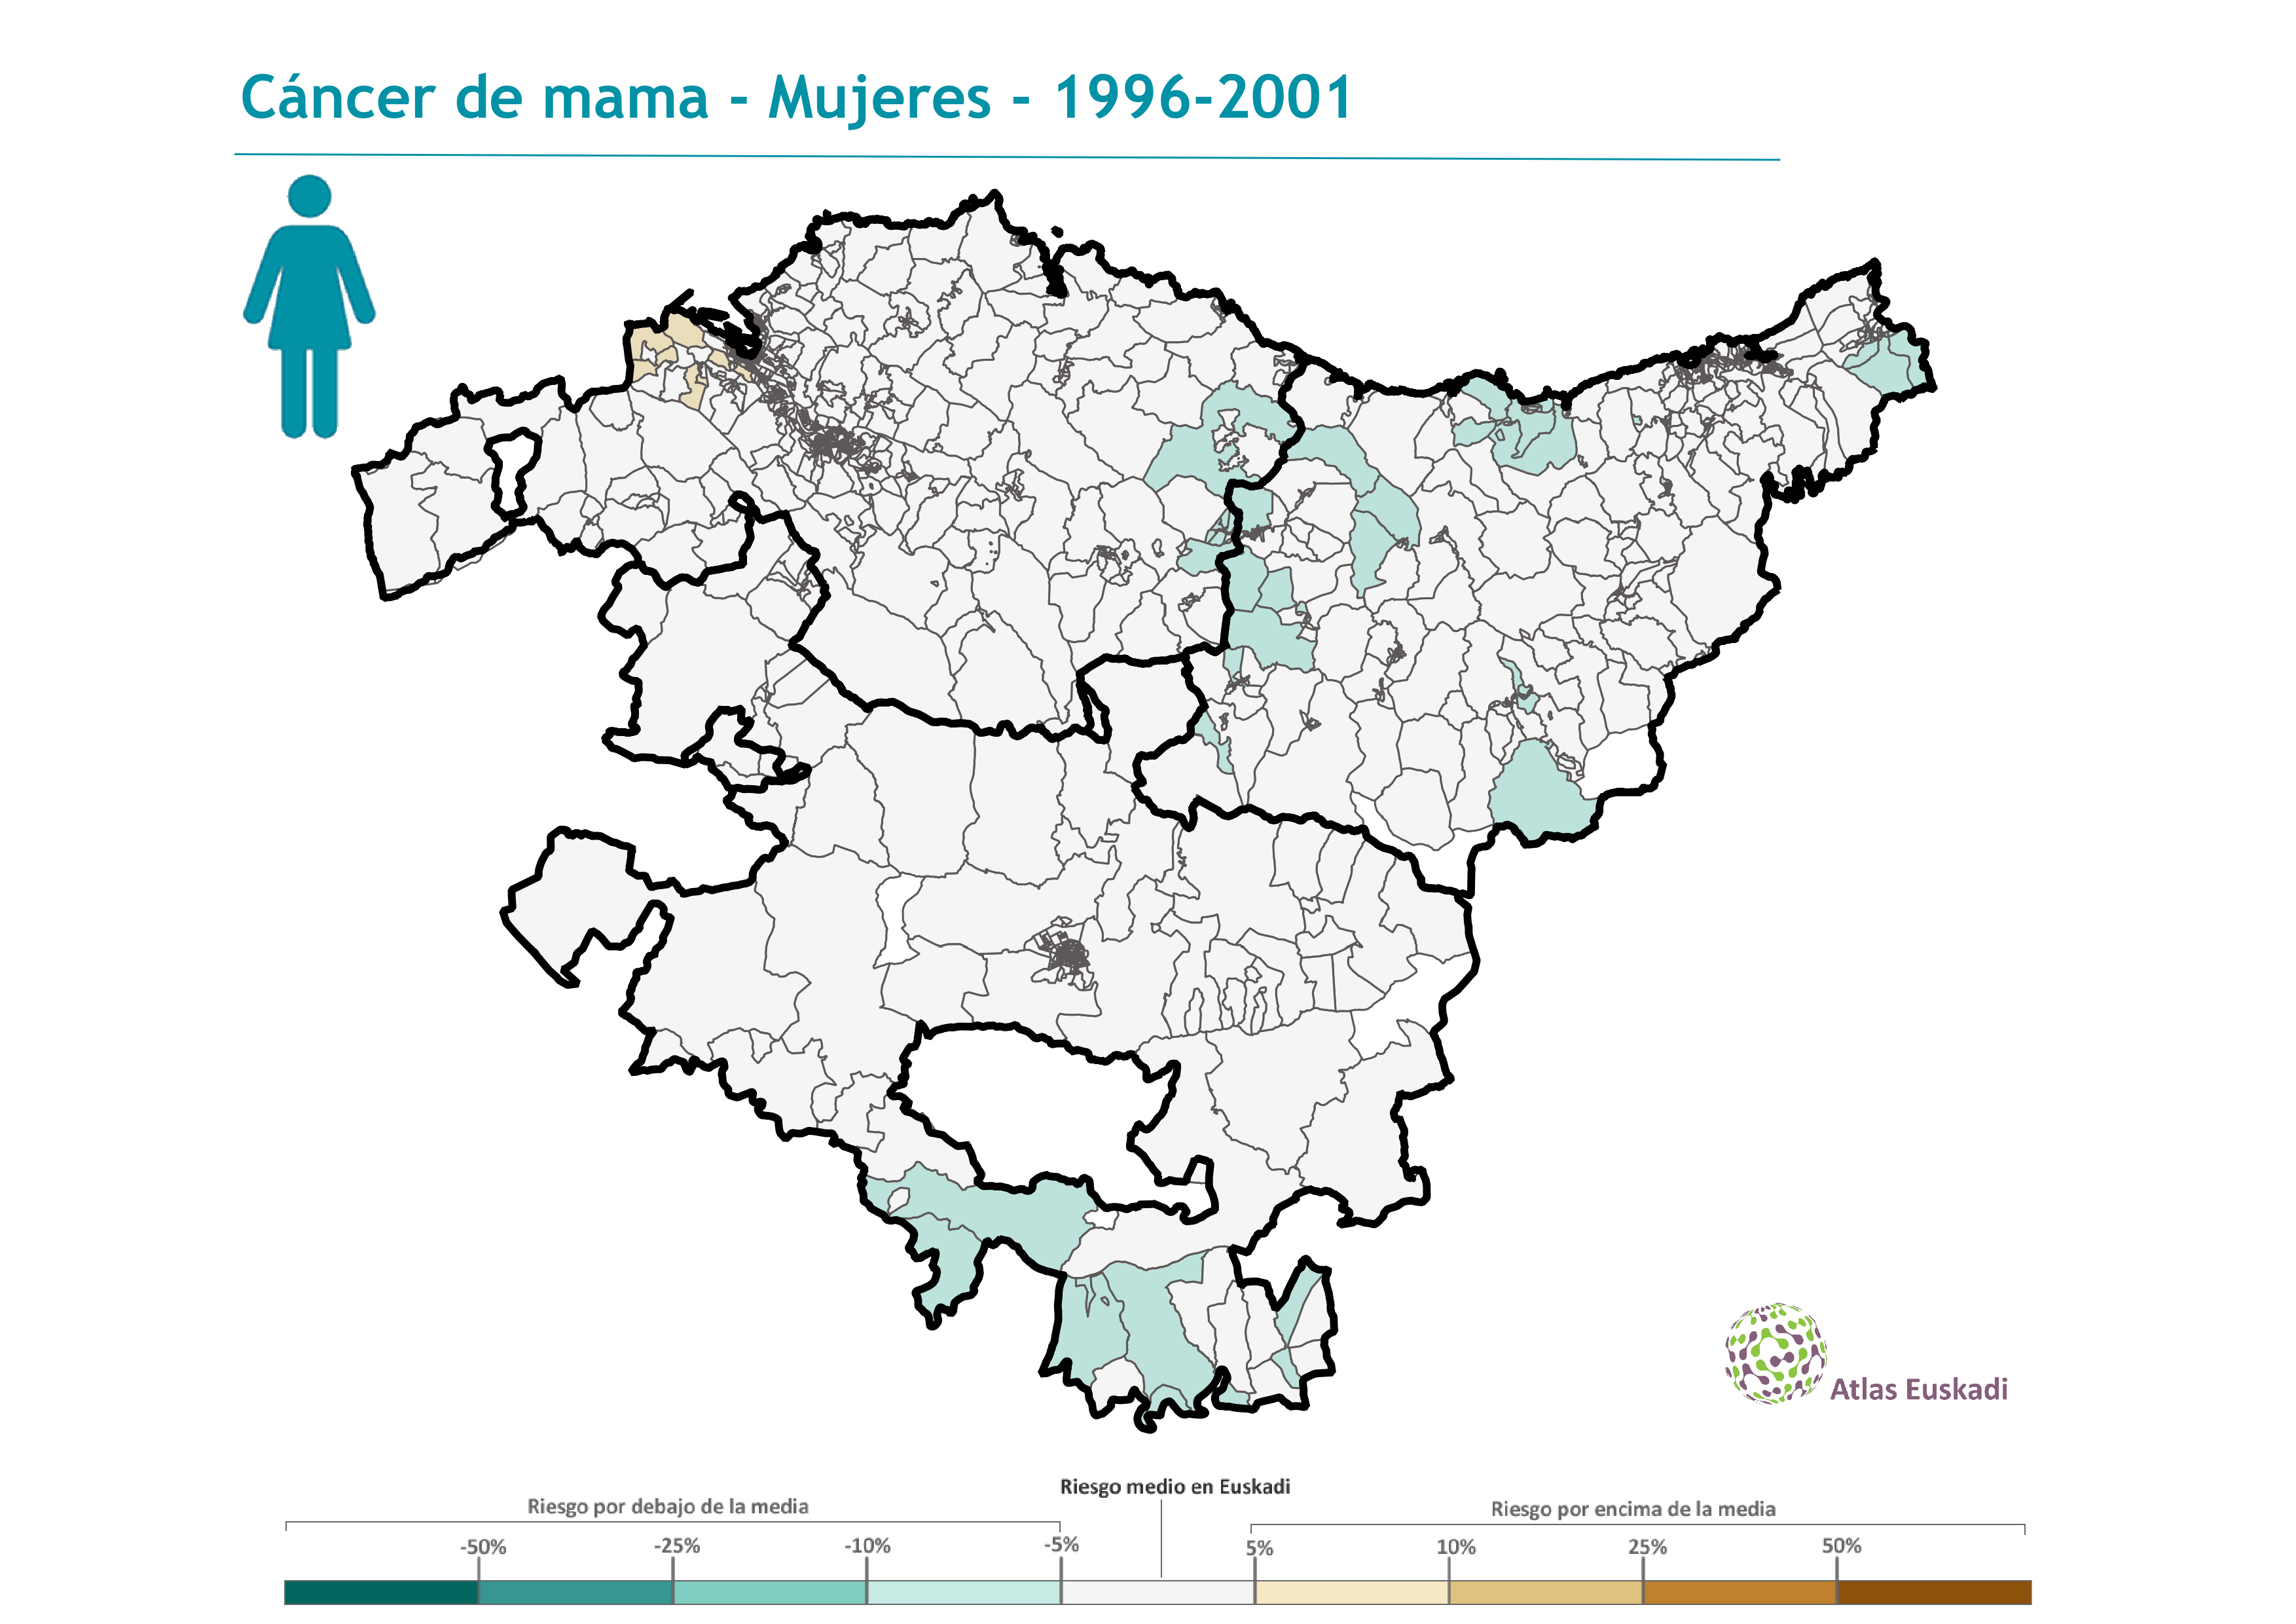 Cáncer de mama mujeres  1996-2001 Euskadi